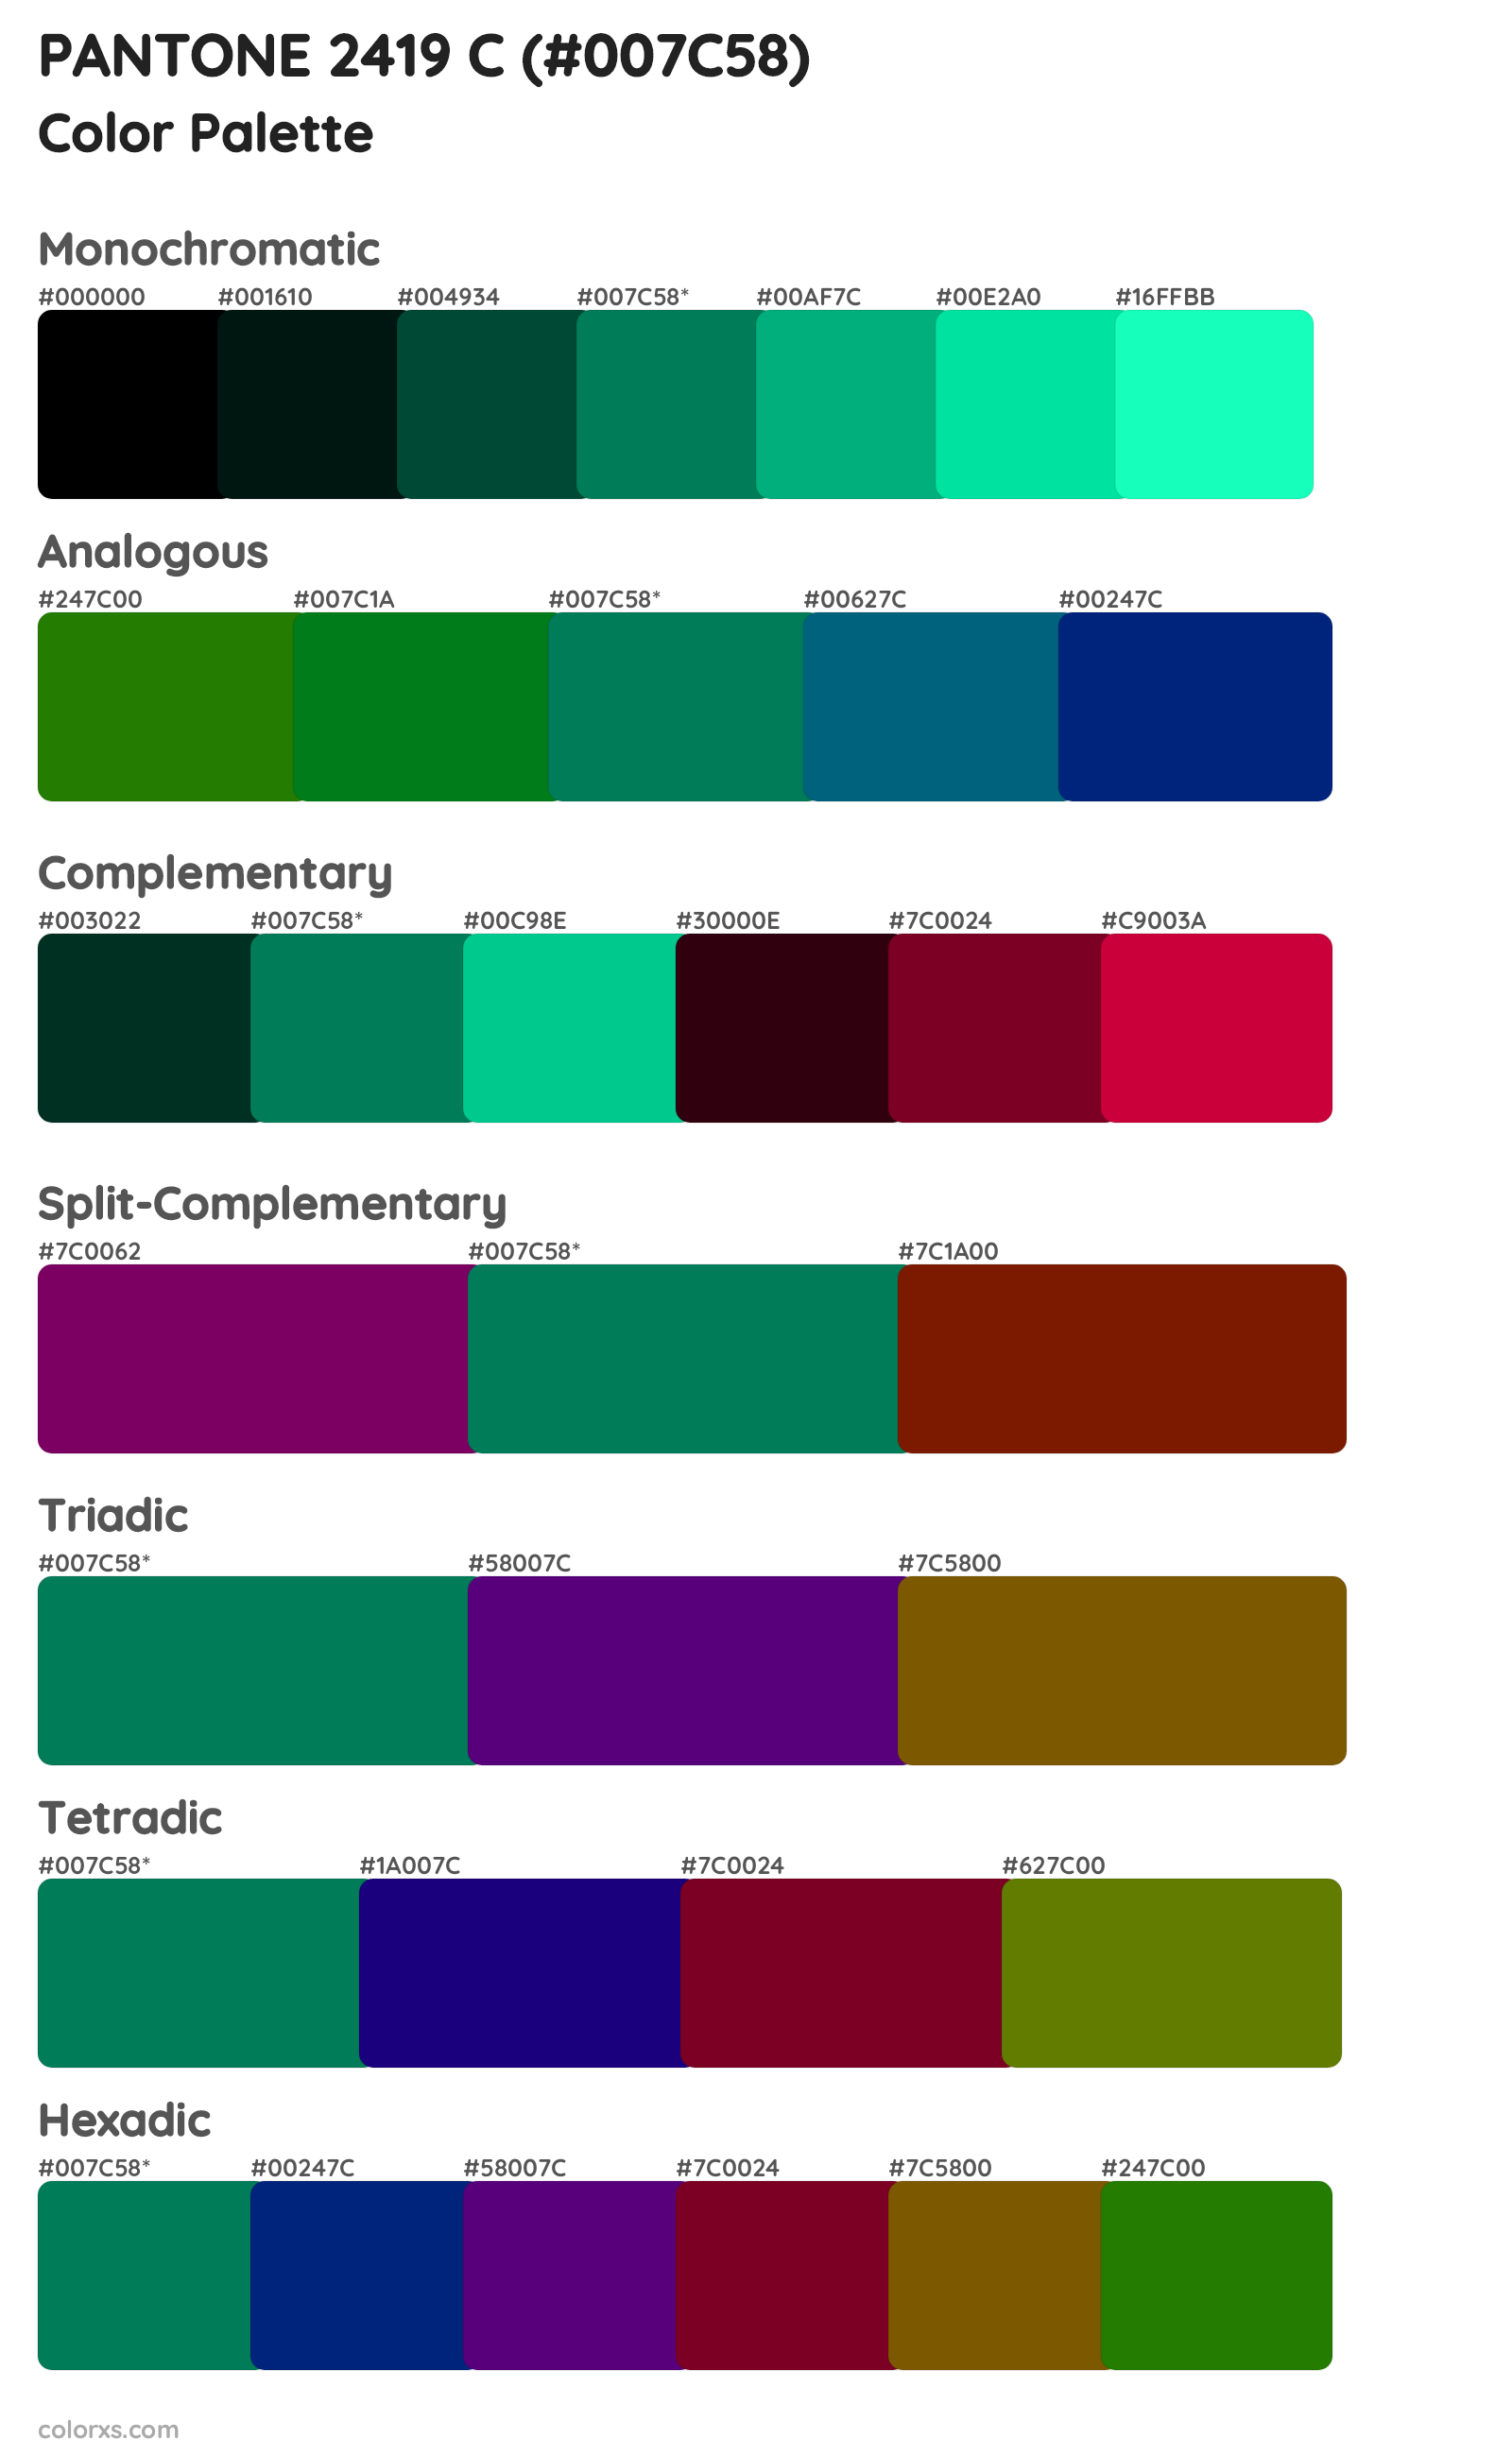 PANTONE 2419 C Color Scheme Palettes